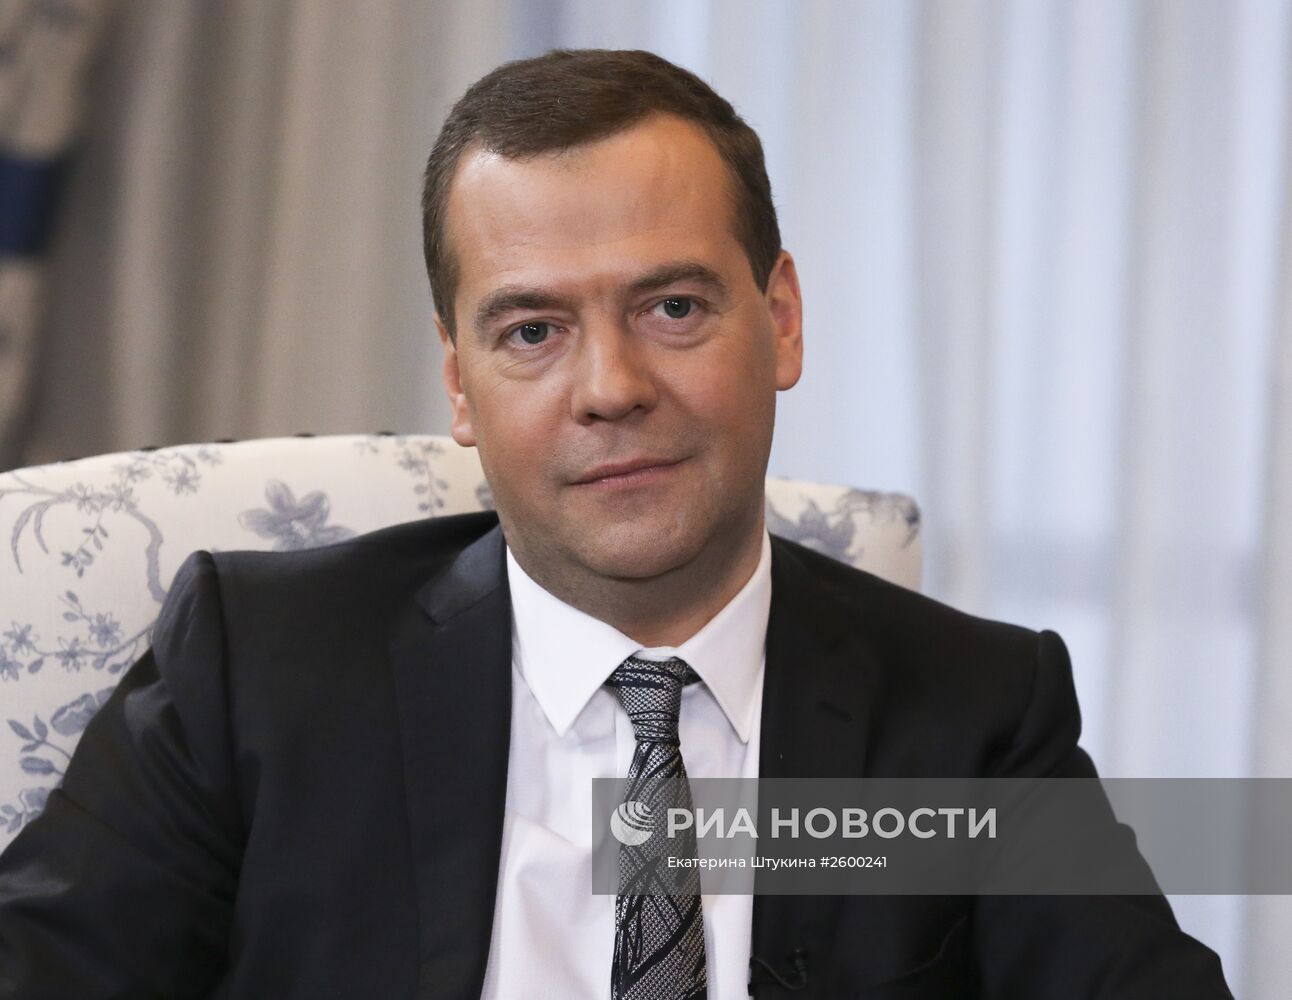 Премьер-министр РФ Д.Медведев дал интервью представителям вьетнамских СМИ